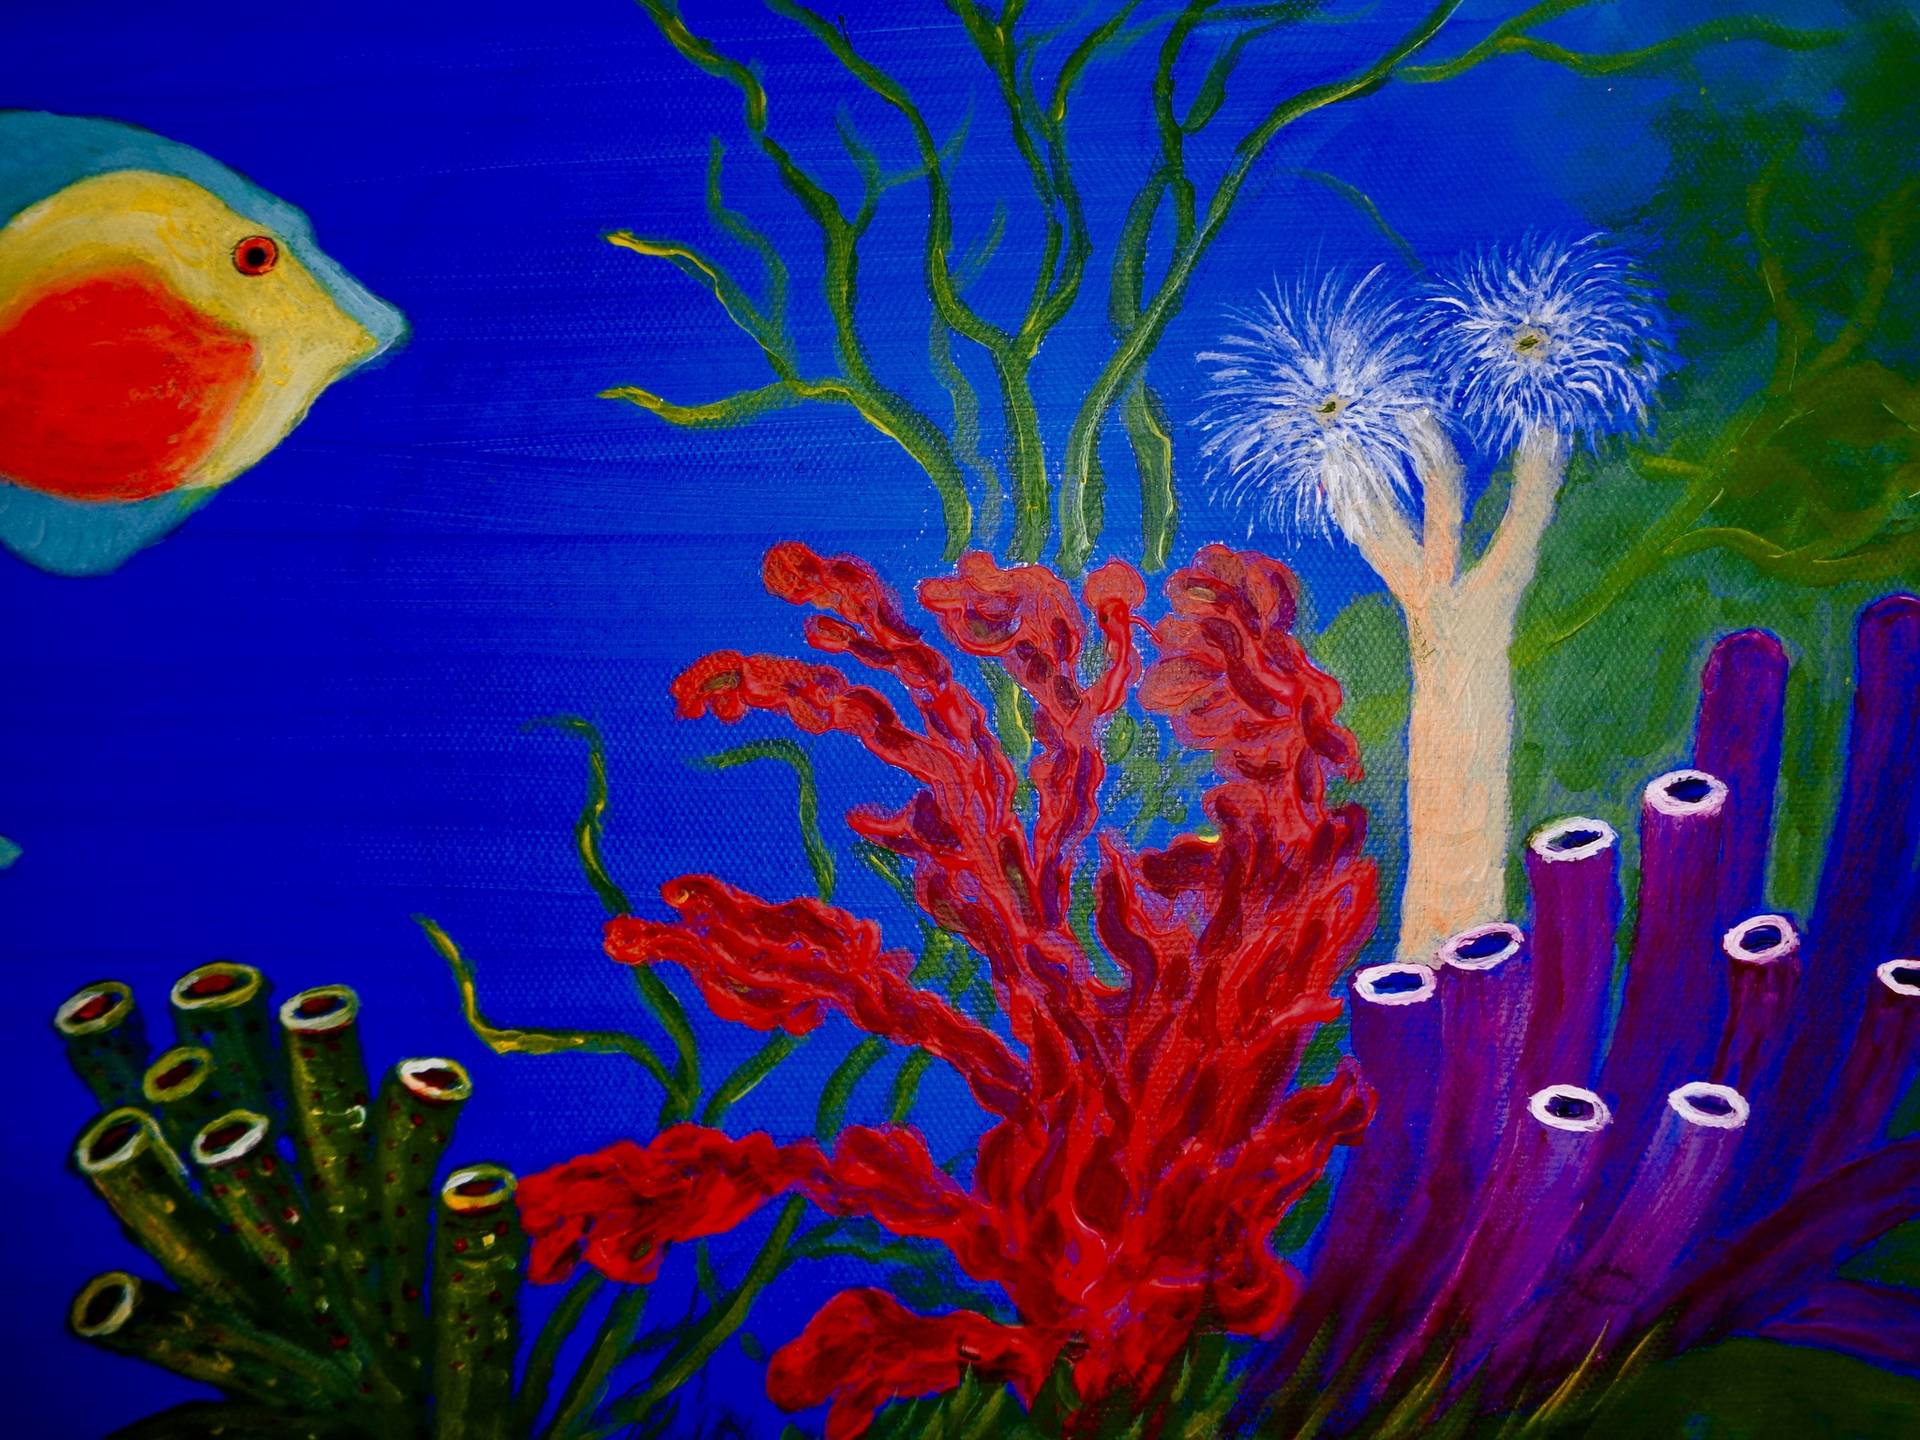 Coral Reef Painting - Coral reef turtle painting by linda olsen nature ...